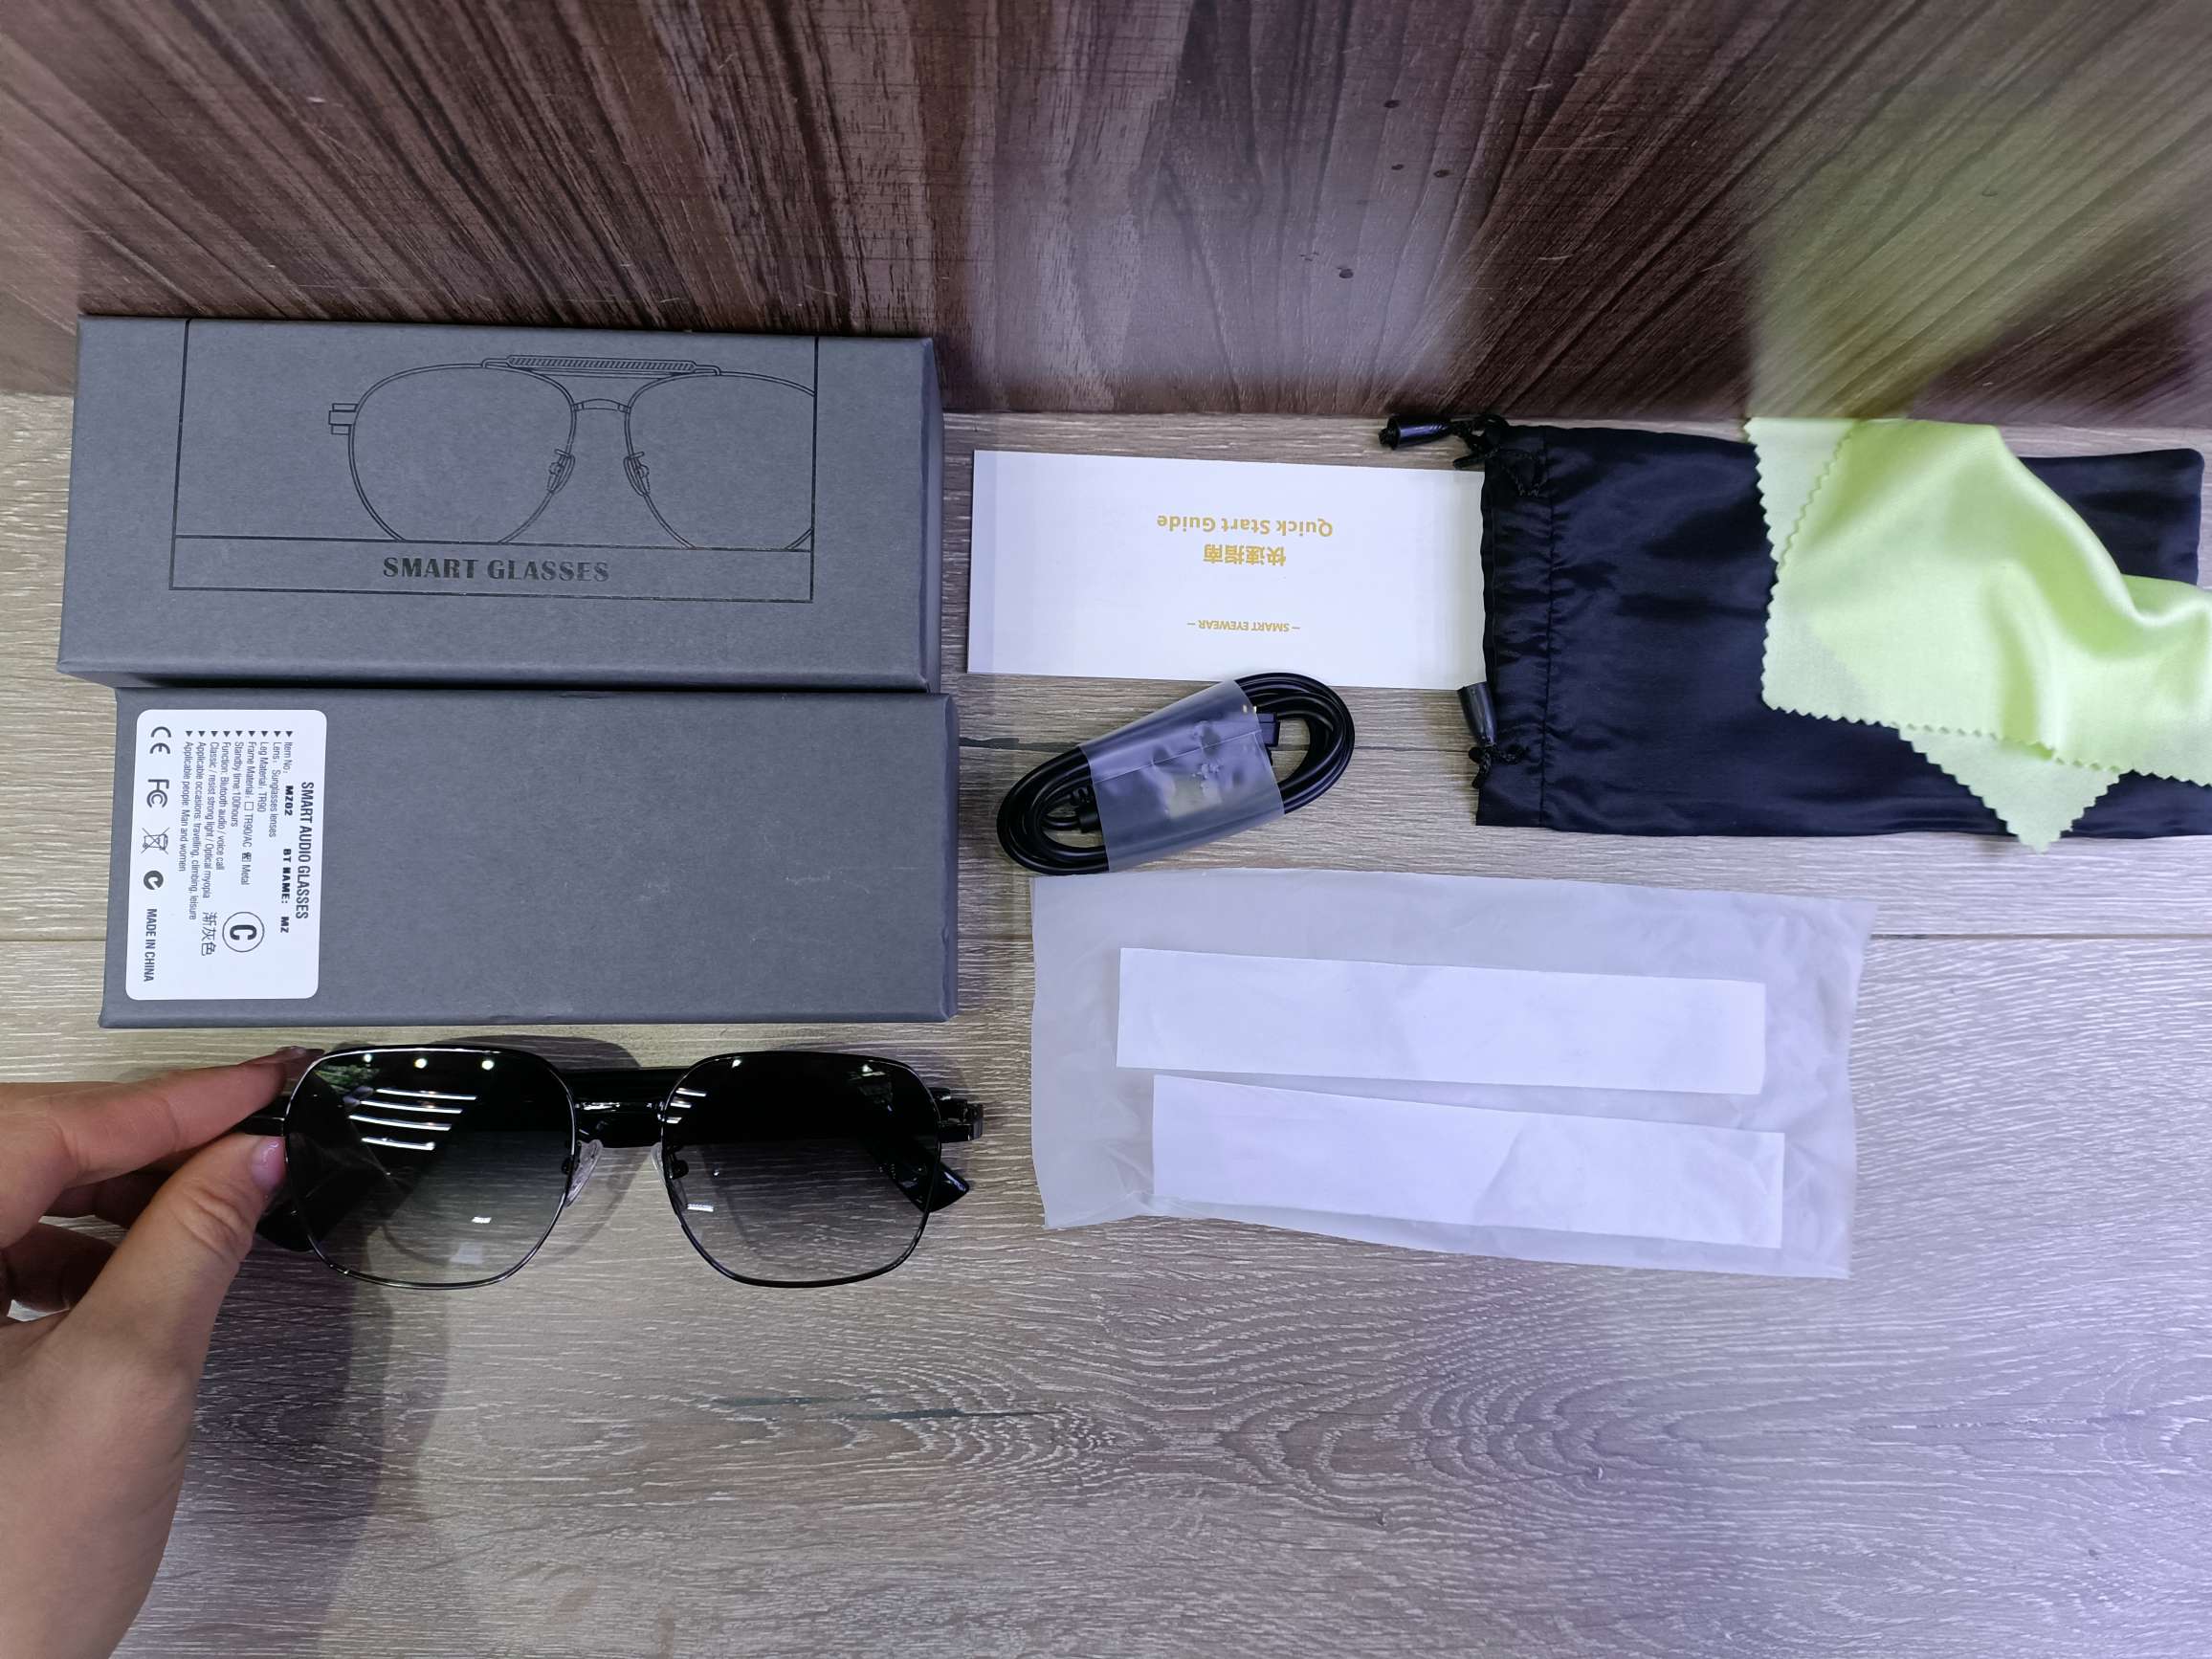 MZ02蓝牙眼镜智能眼镜听歌通话墨镜防UV400紫外线 支持快充智能蓝牙紫外线太阳镜通话音乐骑行户外多功能打电话时尚眼镜详情图3